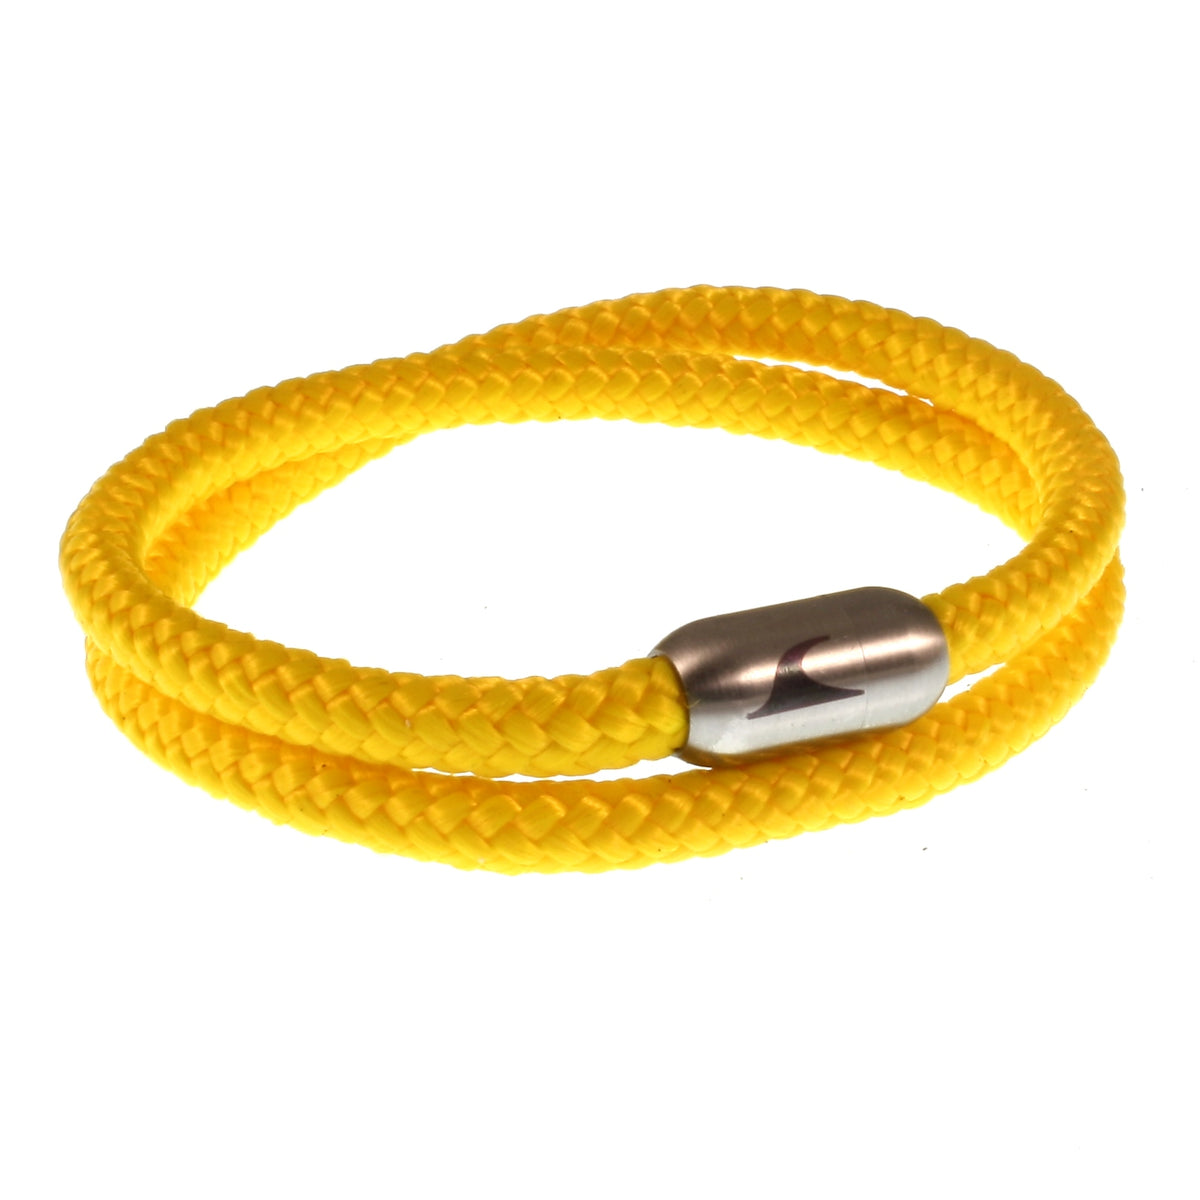 Herren-Segeltau-Armband-damen-hawaii-gelb-silber-Edelstahlverschluss-vorn-wavepirate-shop-st